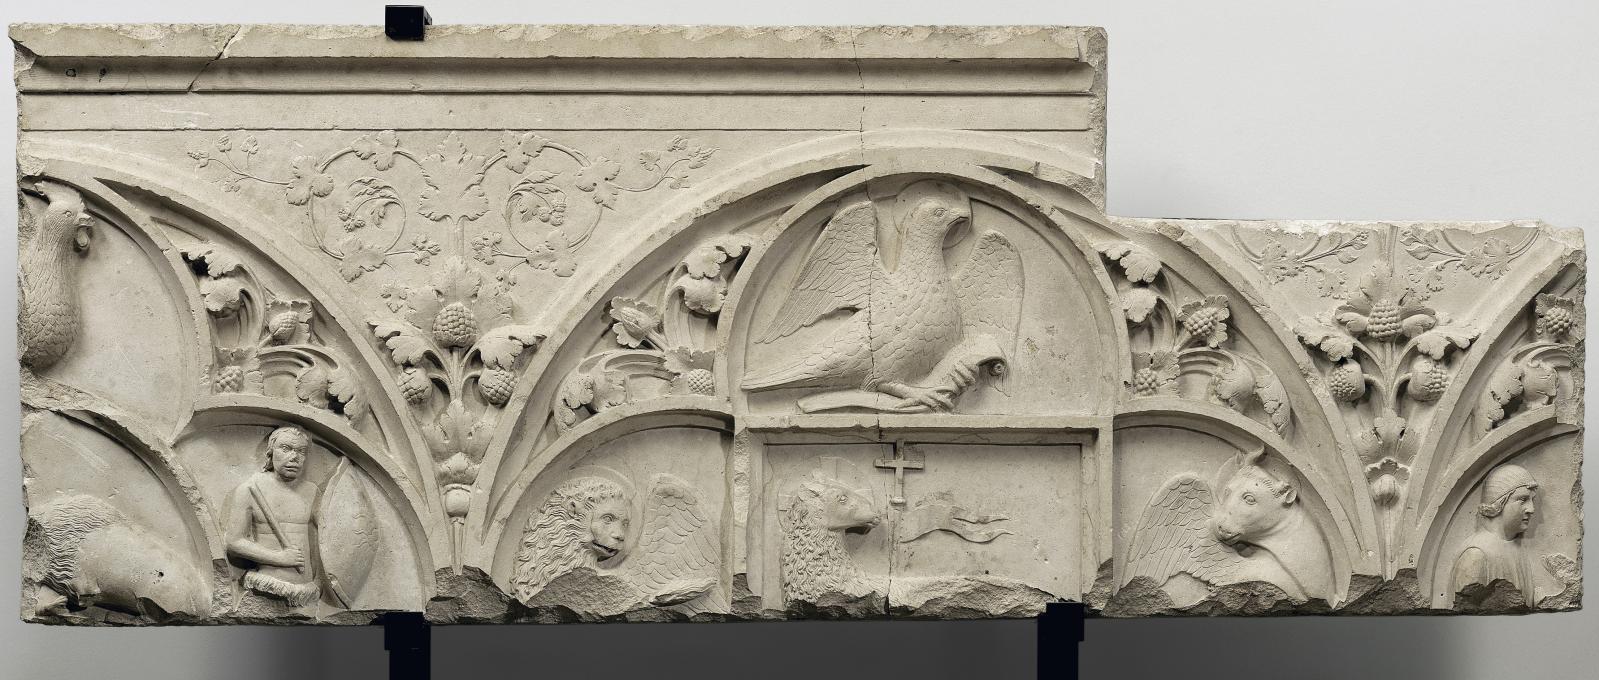 Le fragment du jubé de Chartres, dit «à l’aigle», redécouvert par Philippe Carlier, dont la Justice vient d’ordonner la remise à l’État (milieu XIIIe 